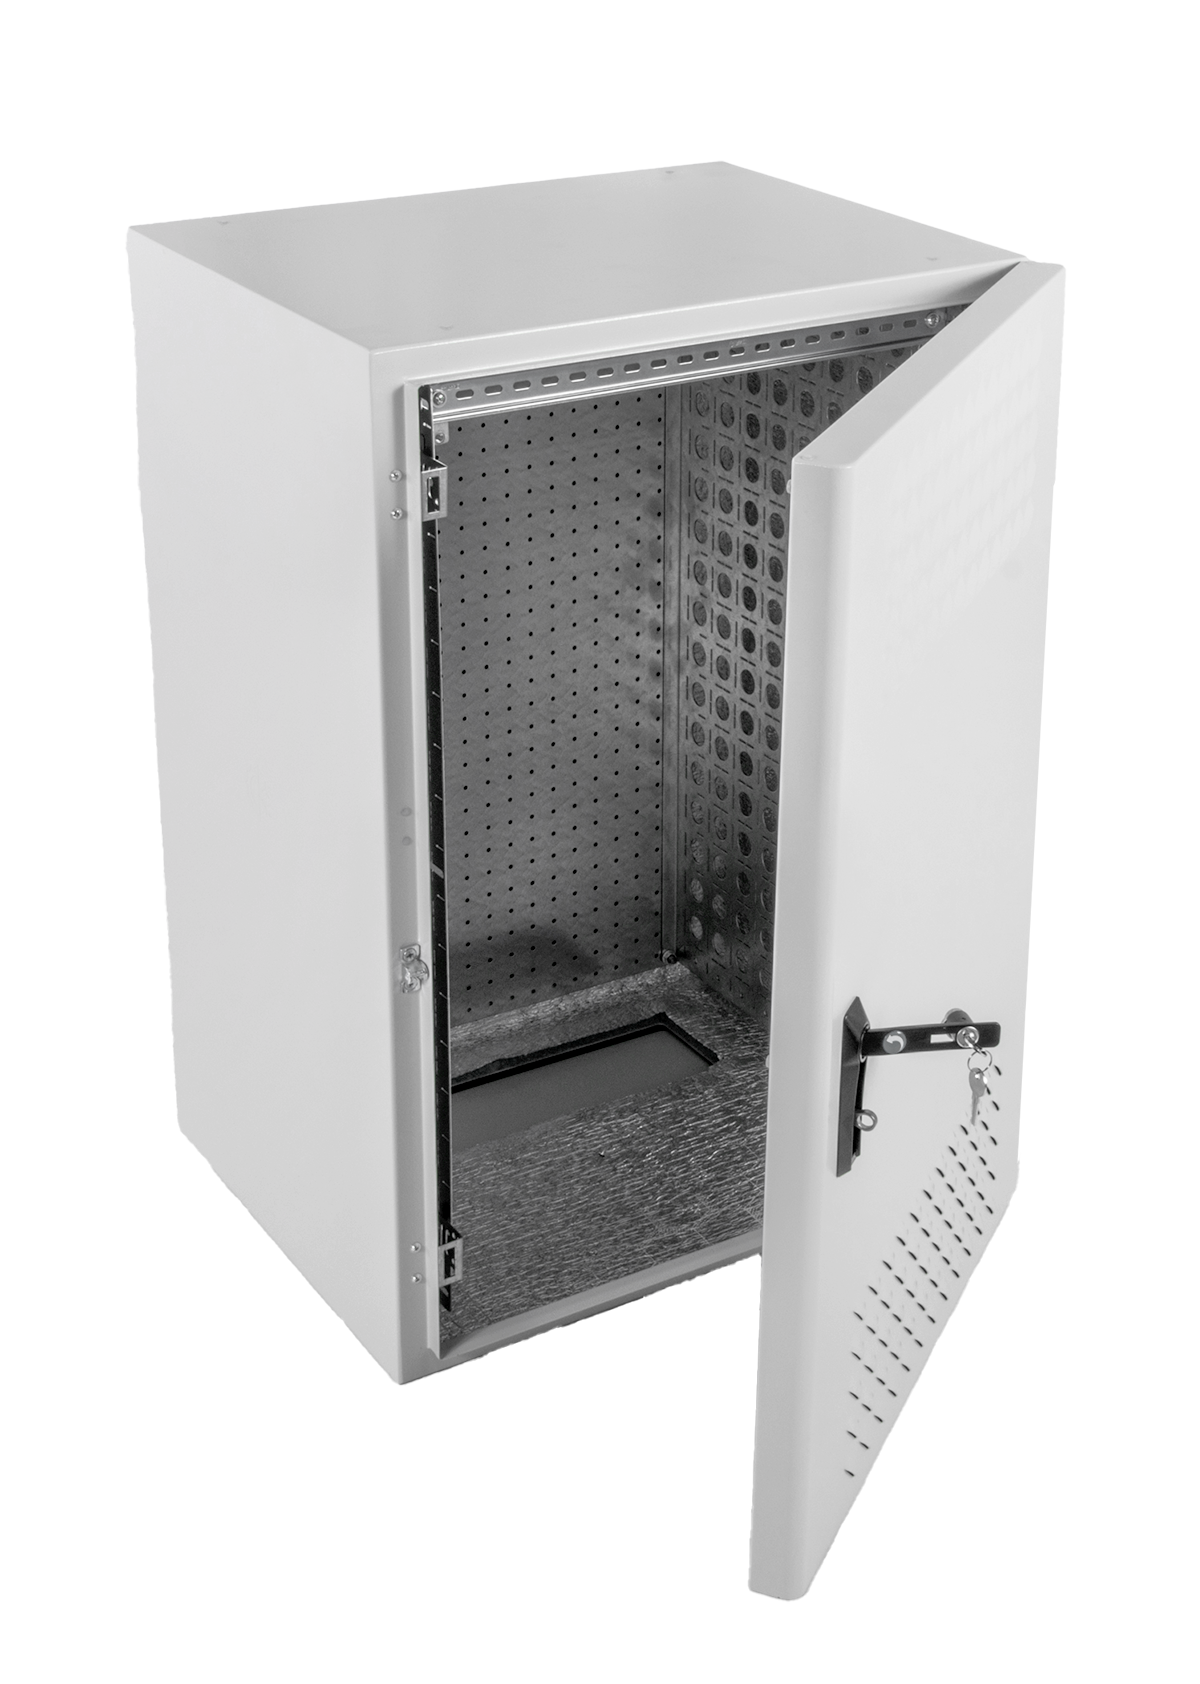 Шкаф всепогодный настенный 15U (Ш600 × Г500), комплектация Т1 с контроллером MC1 и датчиками от ЦМО